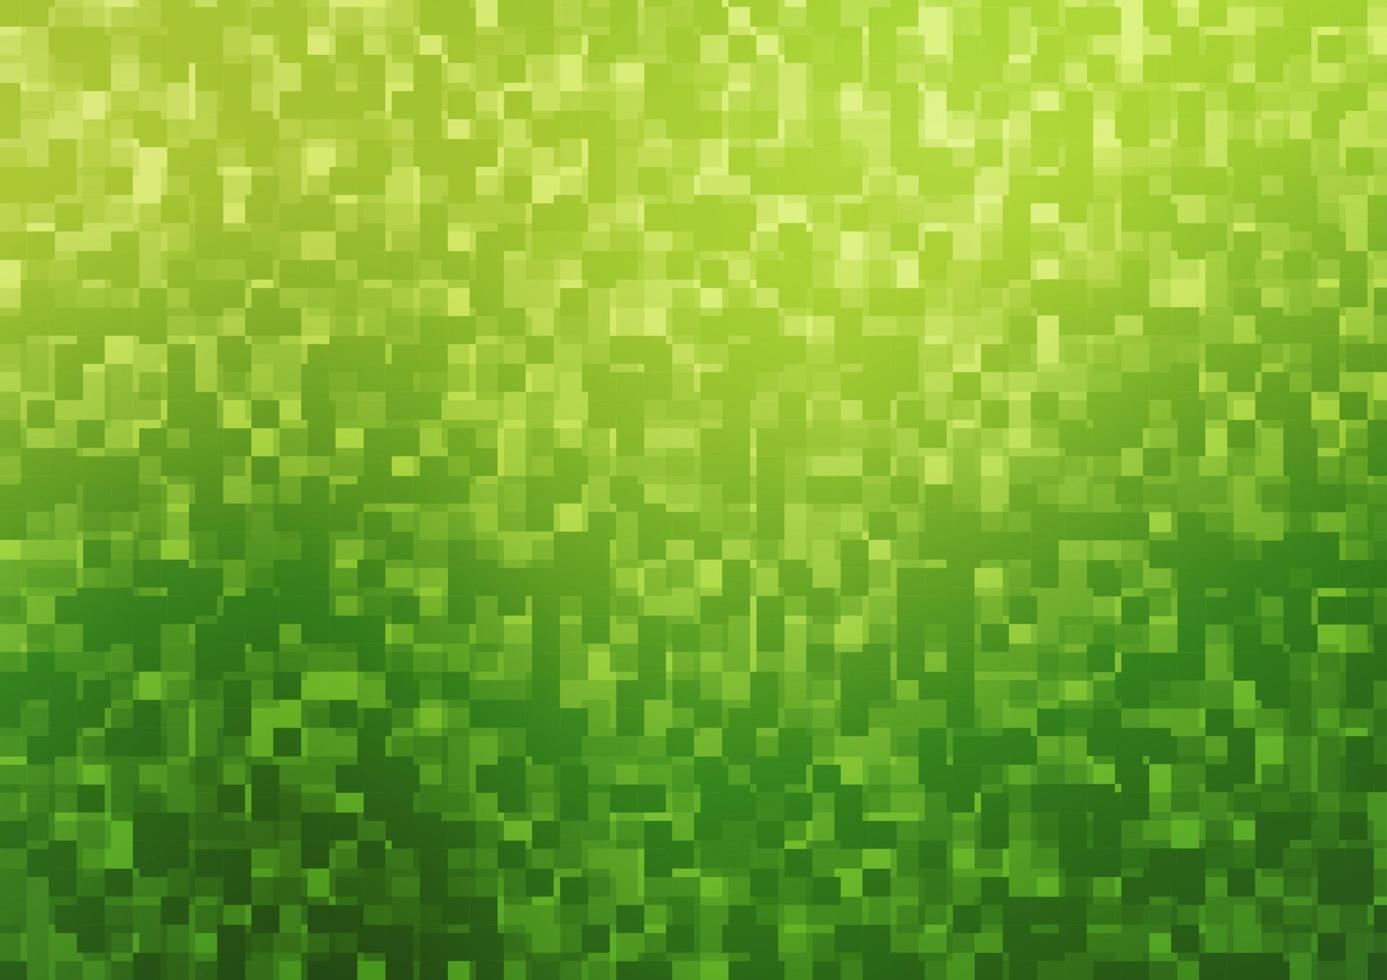 layout de vetor verde e amarelo claro com linhas, retângulos.